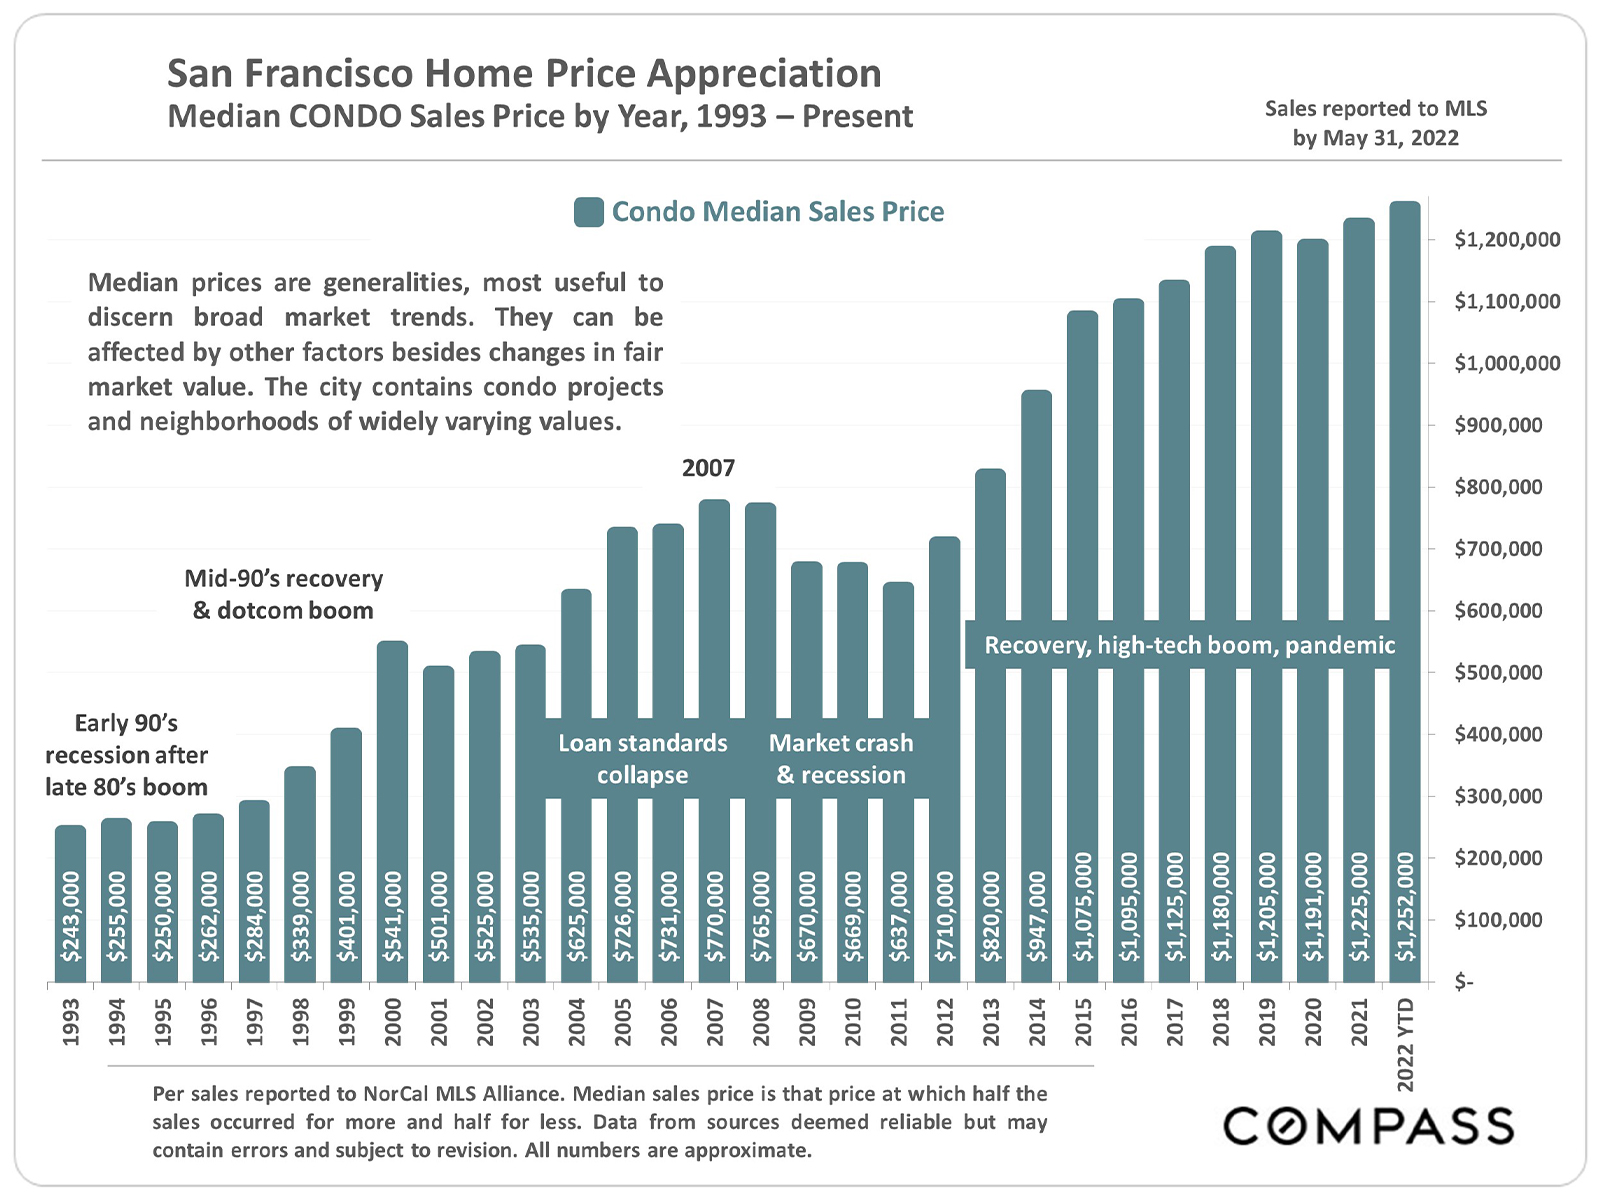 San Francisco Home Price Appreciation Median Condo